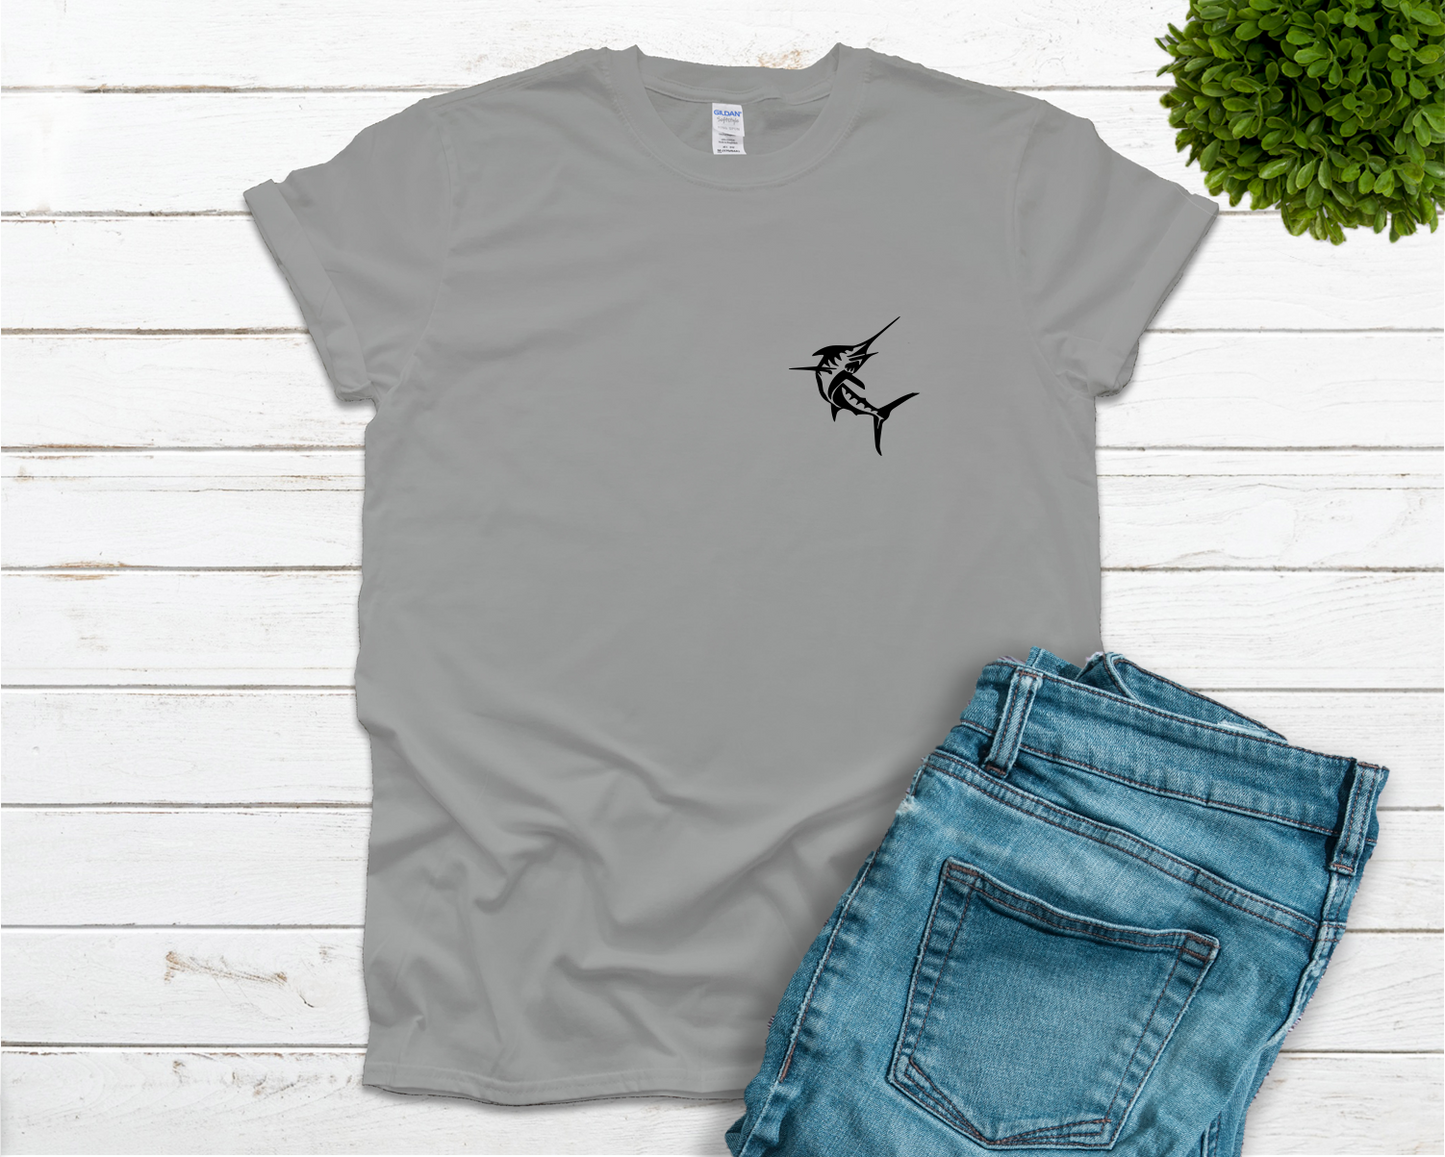 Boat Life T-shirt - Marlin